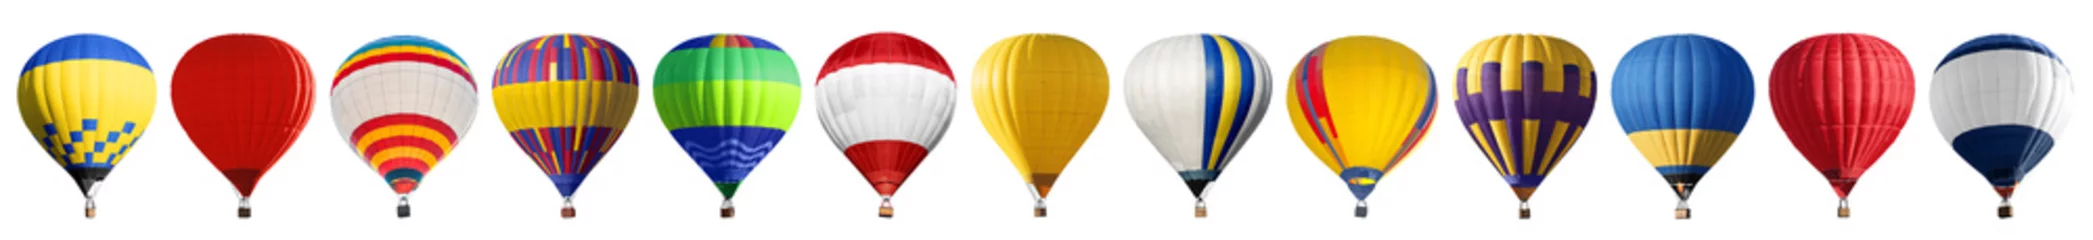 Zelfklevend Fotobehang Set van heldere kleurrijke hete lucht ballonnen op witte achtergrond © New Africa